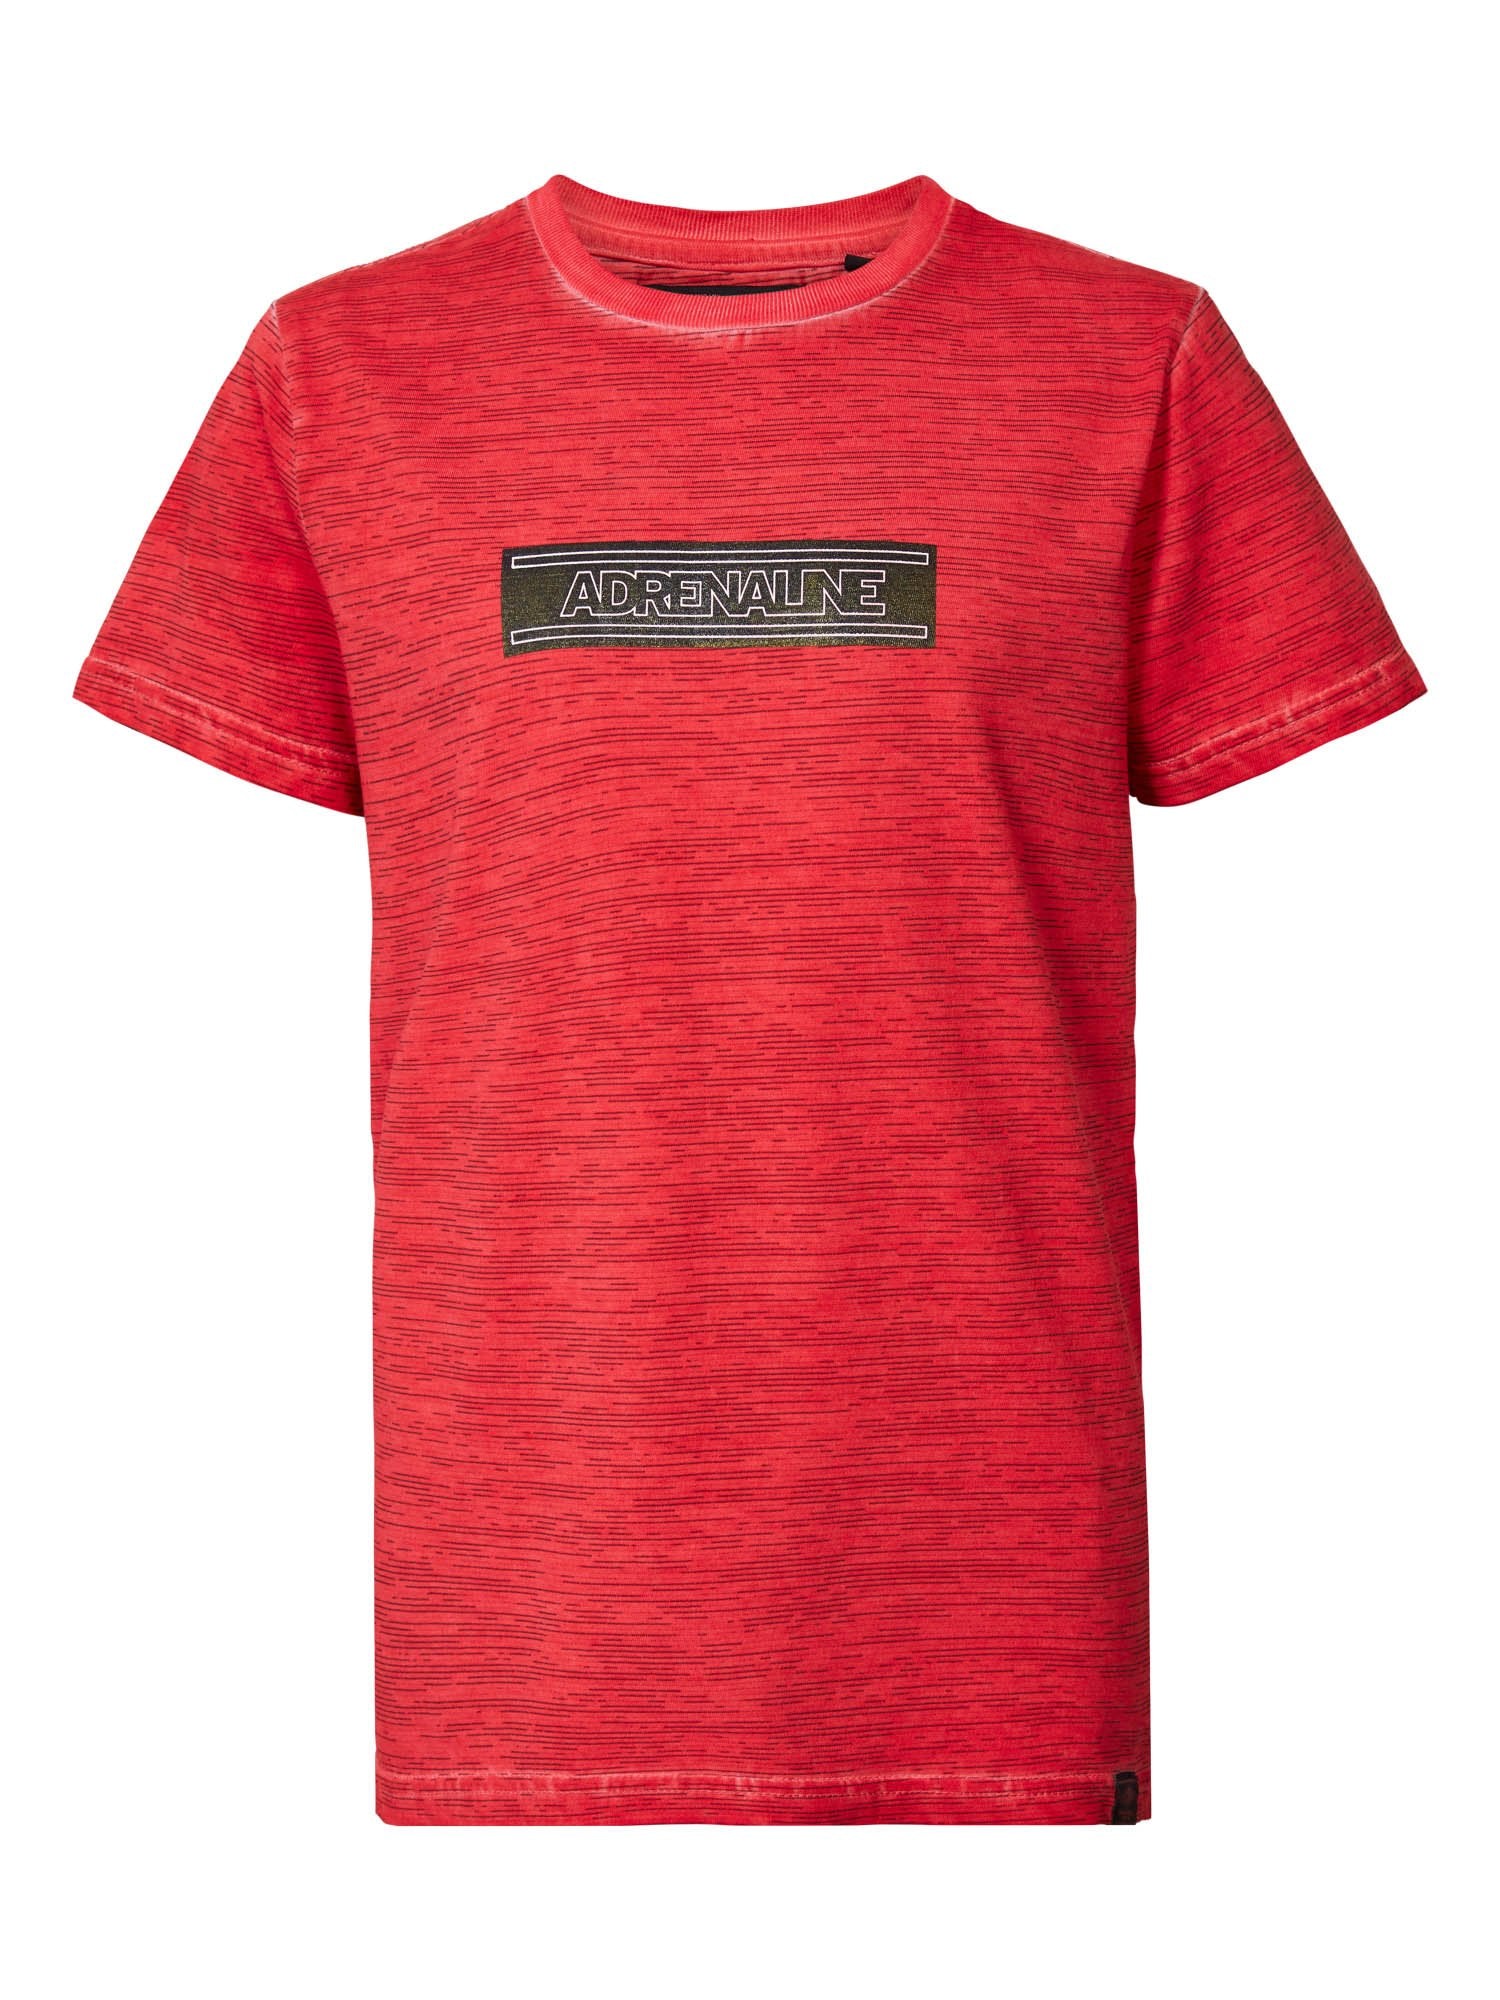 Jongens T-shirt SS R-neck Adrenaline van Petrol in de kleur Imperial Red in maat 176.